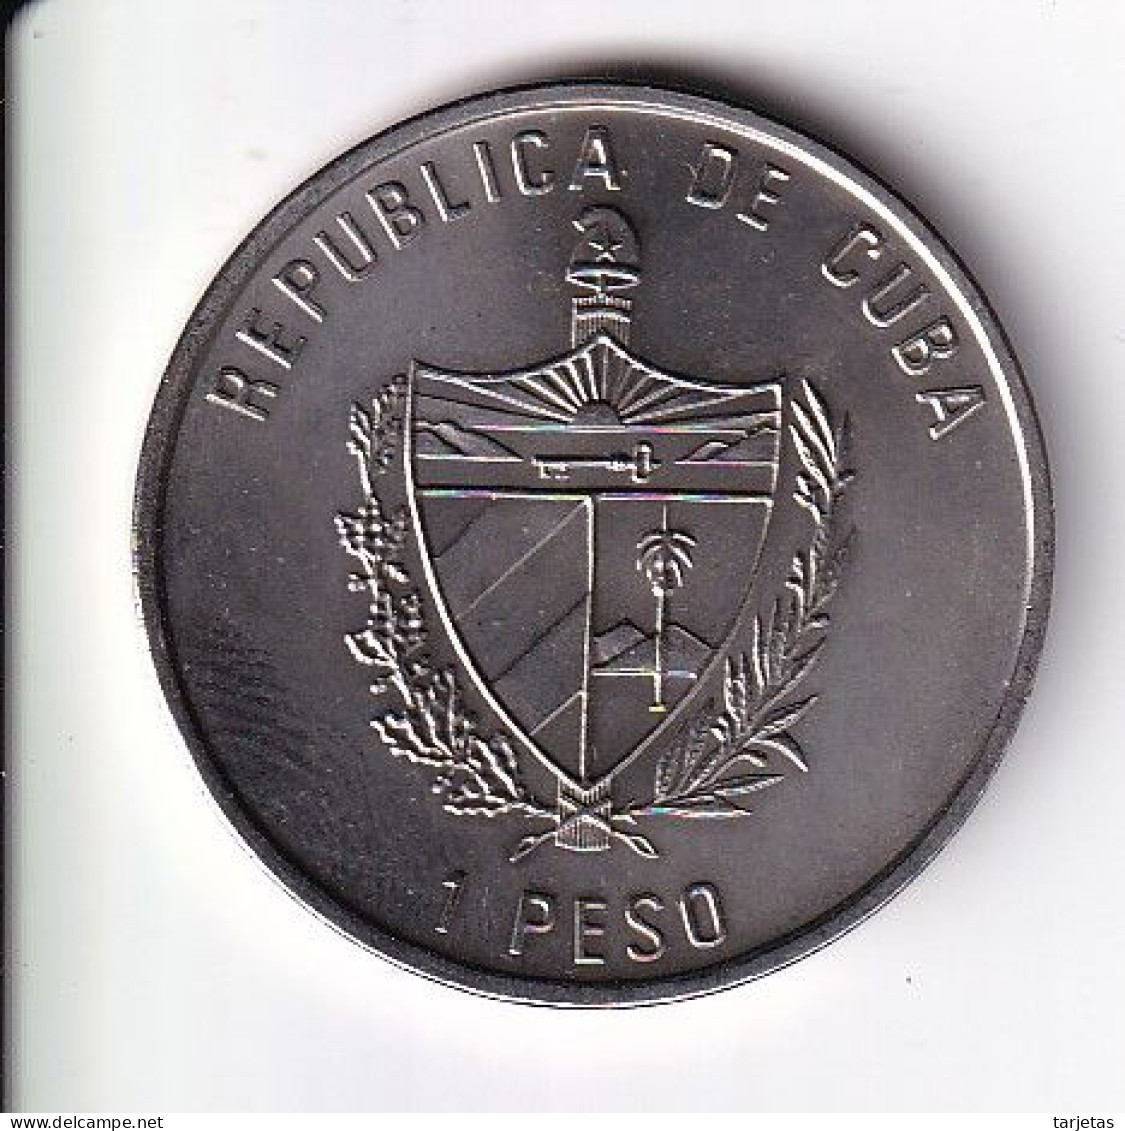 MONEDA DE CUBA DE 1 PESO DEL AÑO 1992 - AÑO DE ESPAÑA - PALAU SANT JORDI DE BARCELONA (NUEVA-UNC) - Kuba